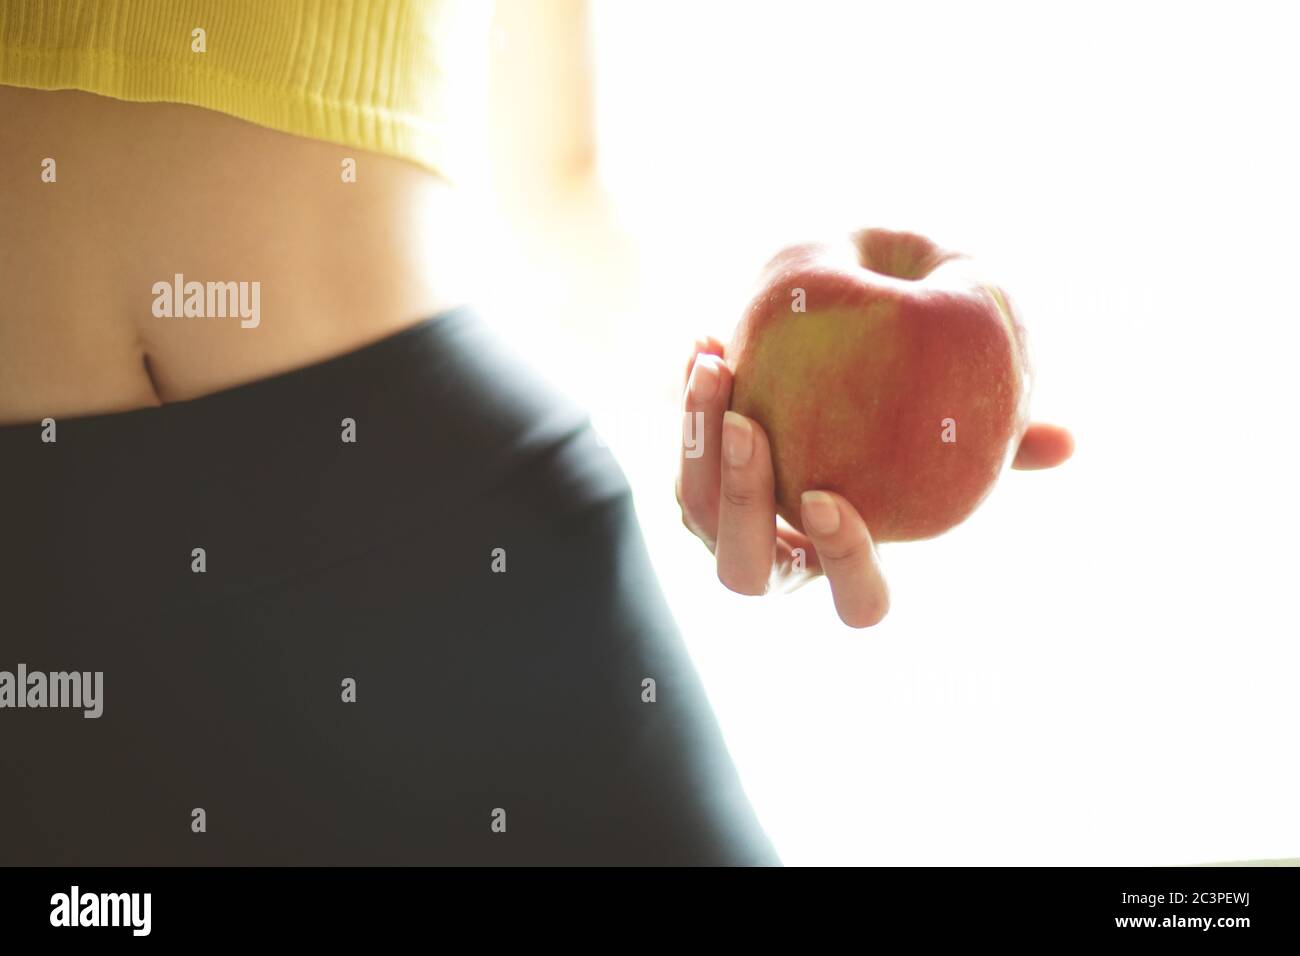 Pomme rouge dans une main femelle. Jeune corps athlétique d'une fille avec leggings et haut. Forme physique et santé Banque D'Images